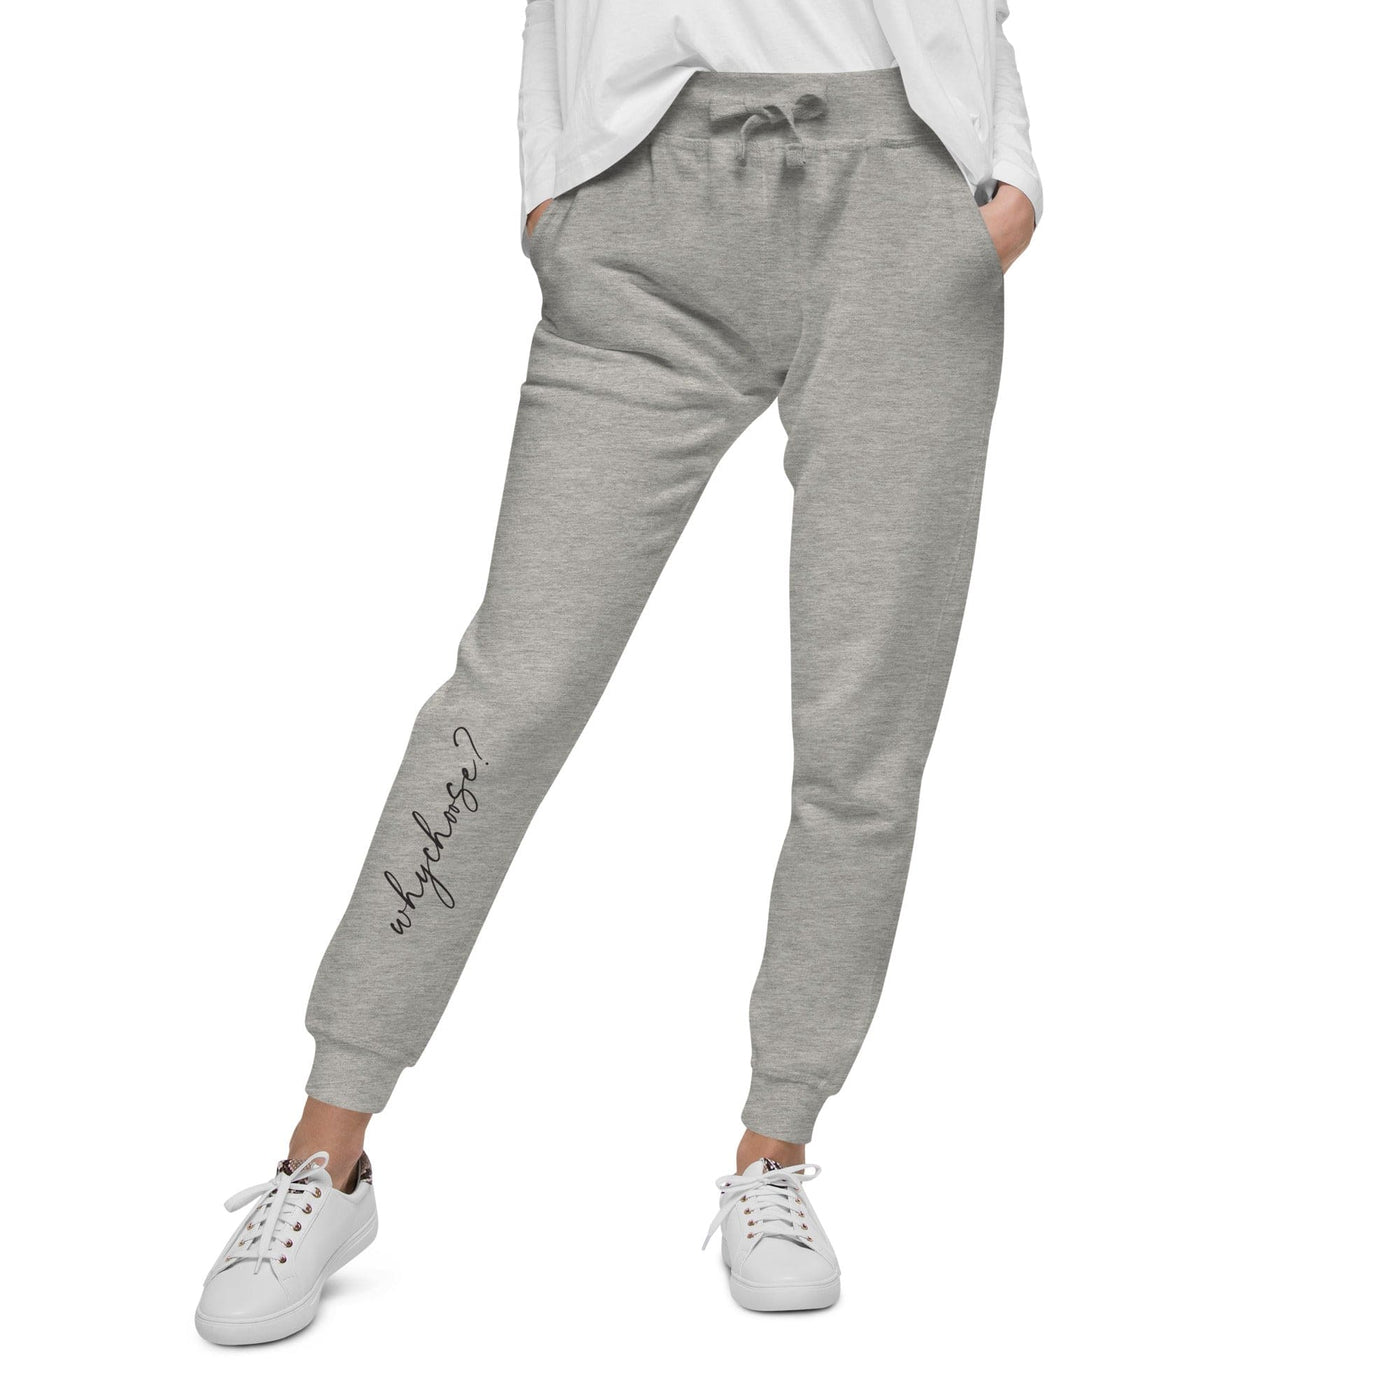 Lit Haven Booktique Sweatpants Carbon Grey / XS Why Choose? Fleece lined sweatpants